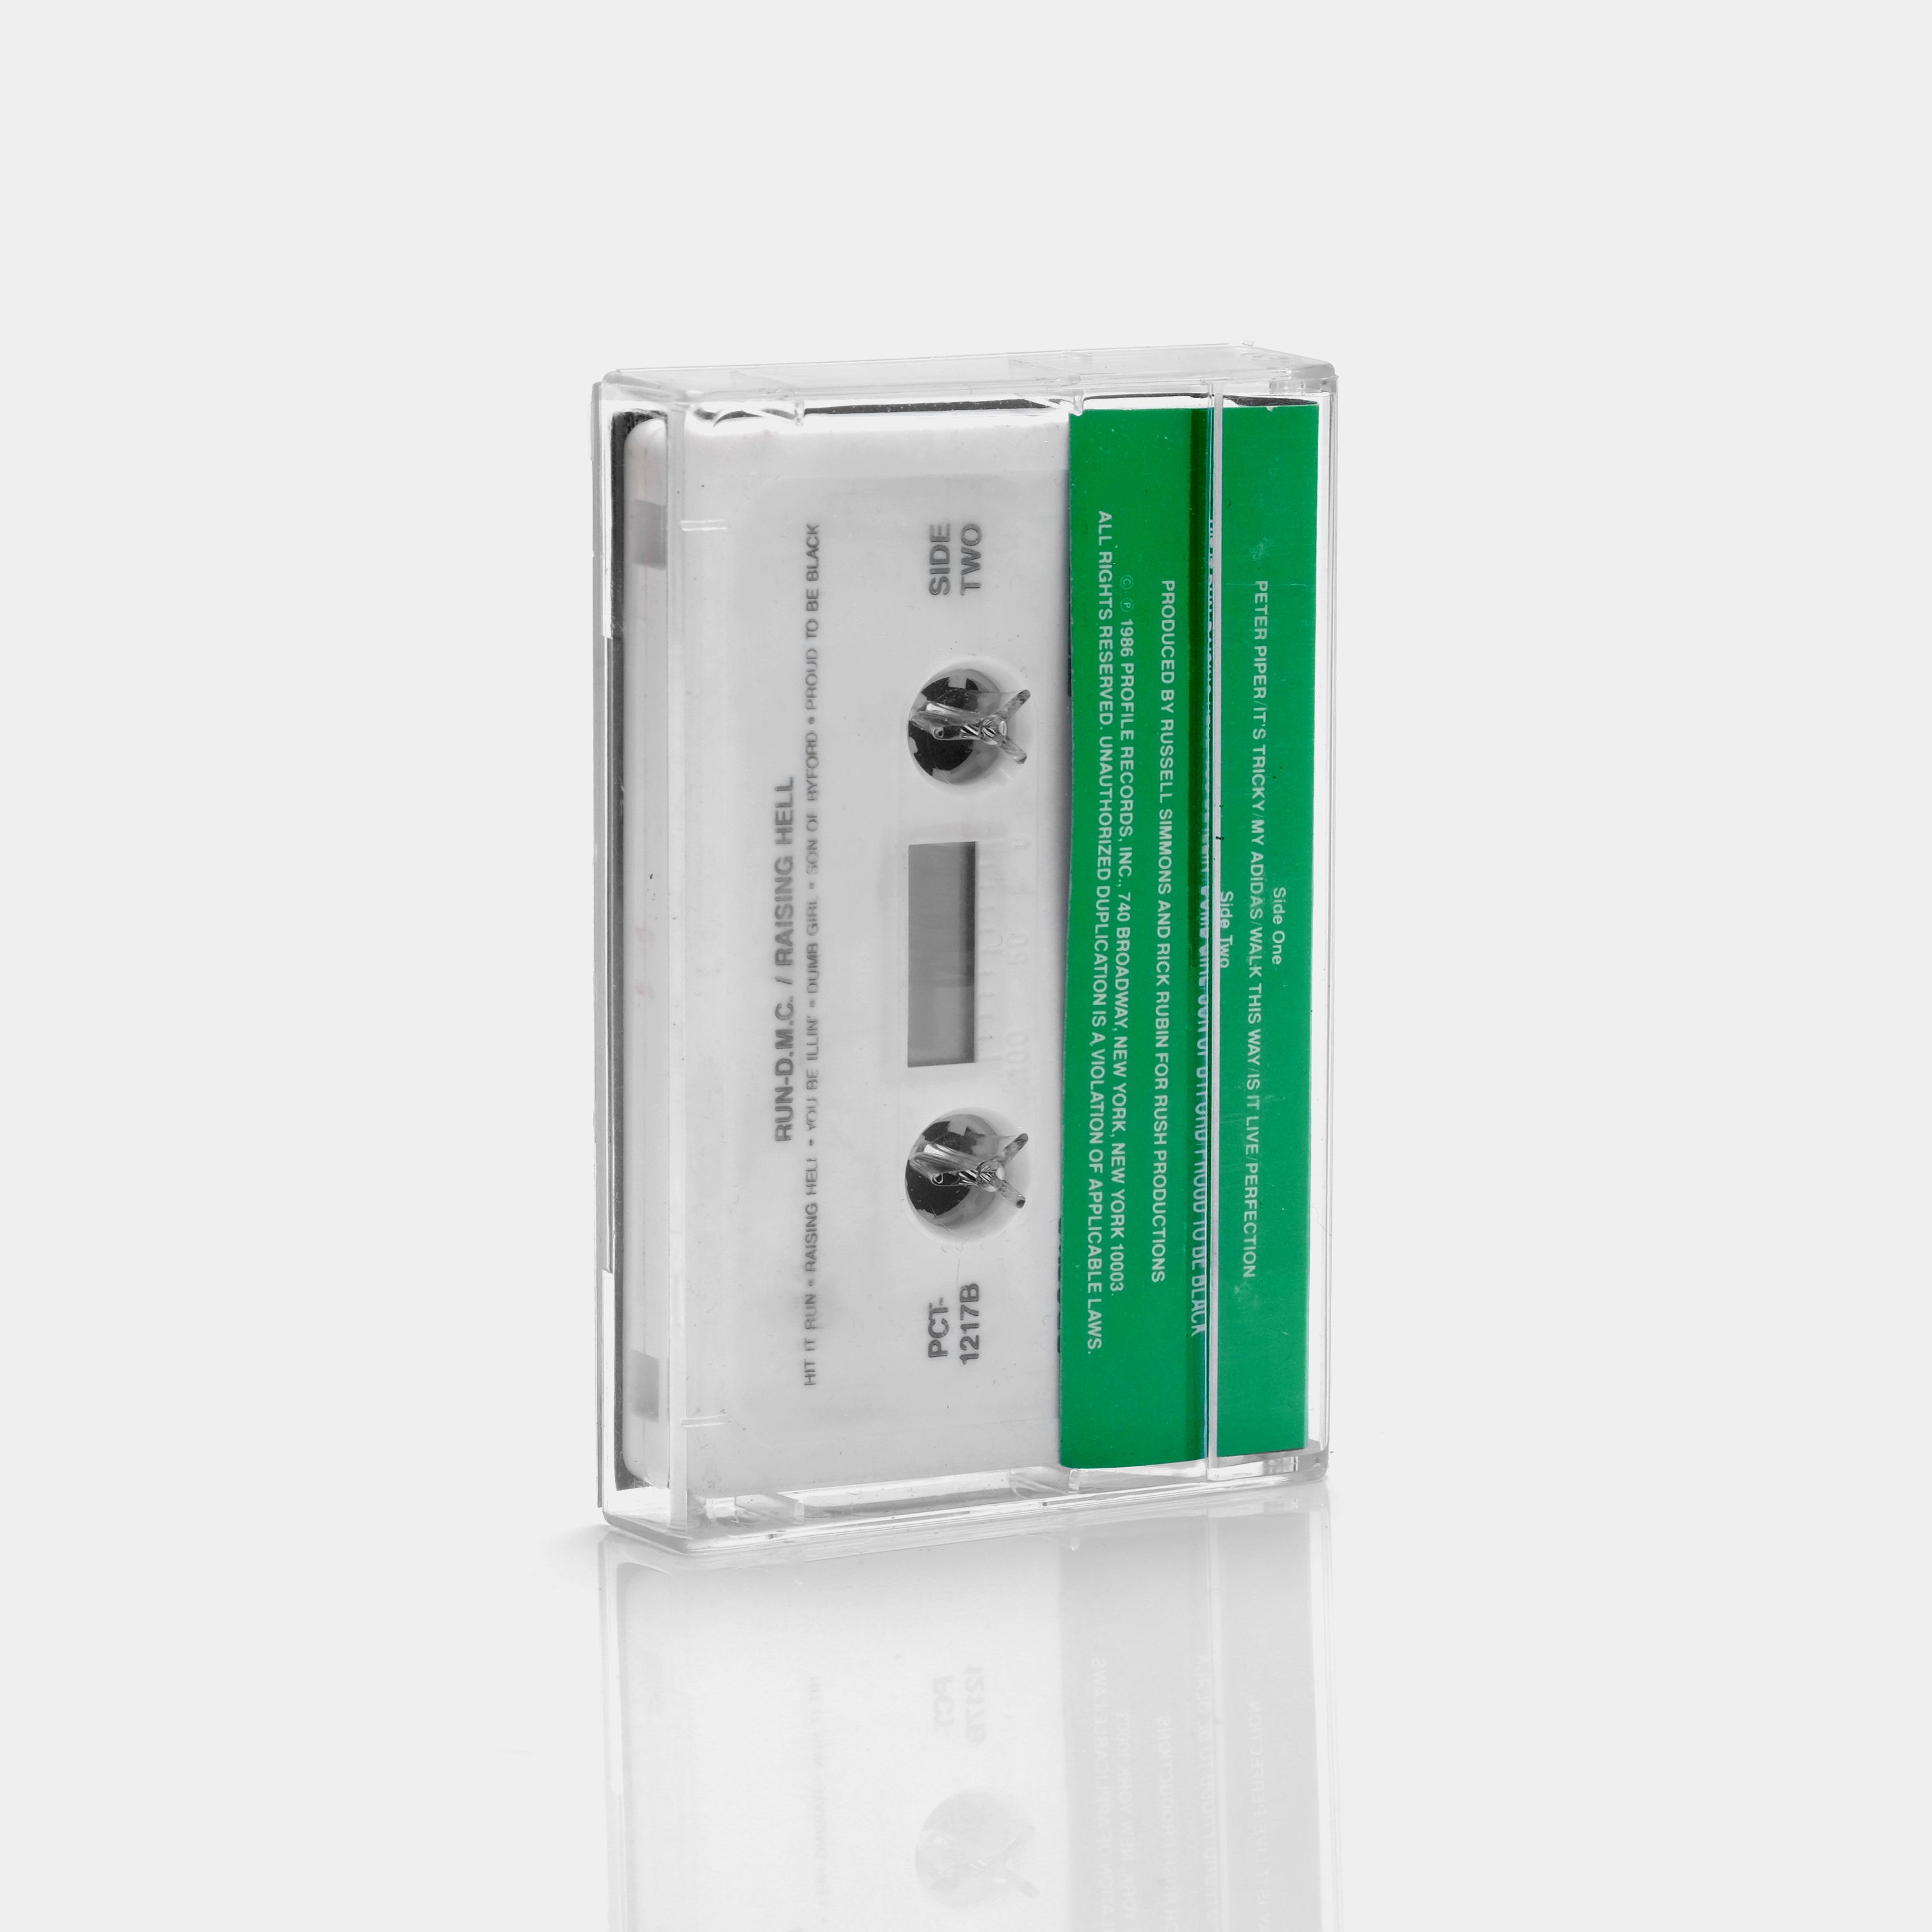 Run-D.M.C. - Raising Hell Cassette Tape